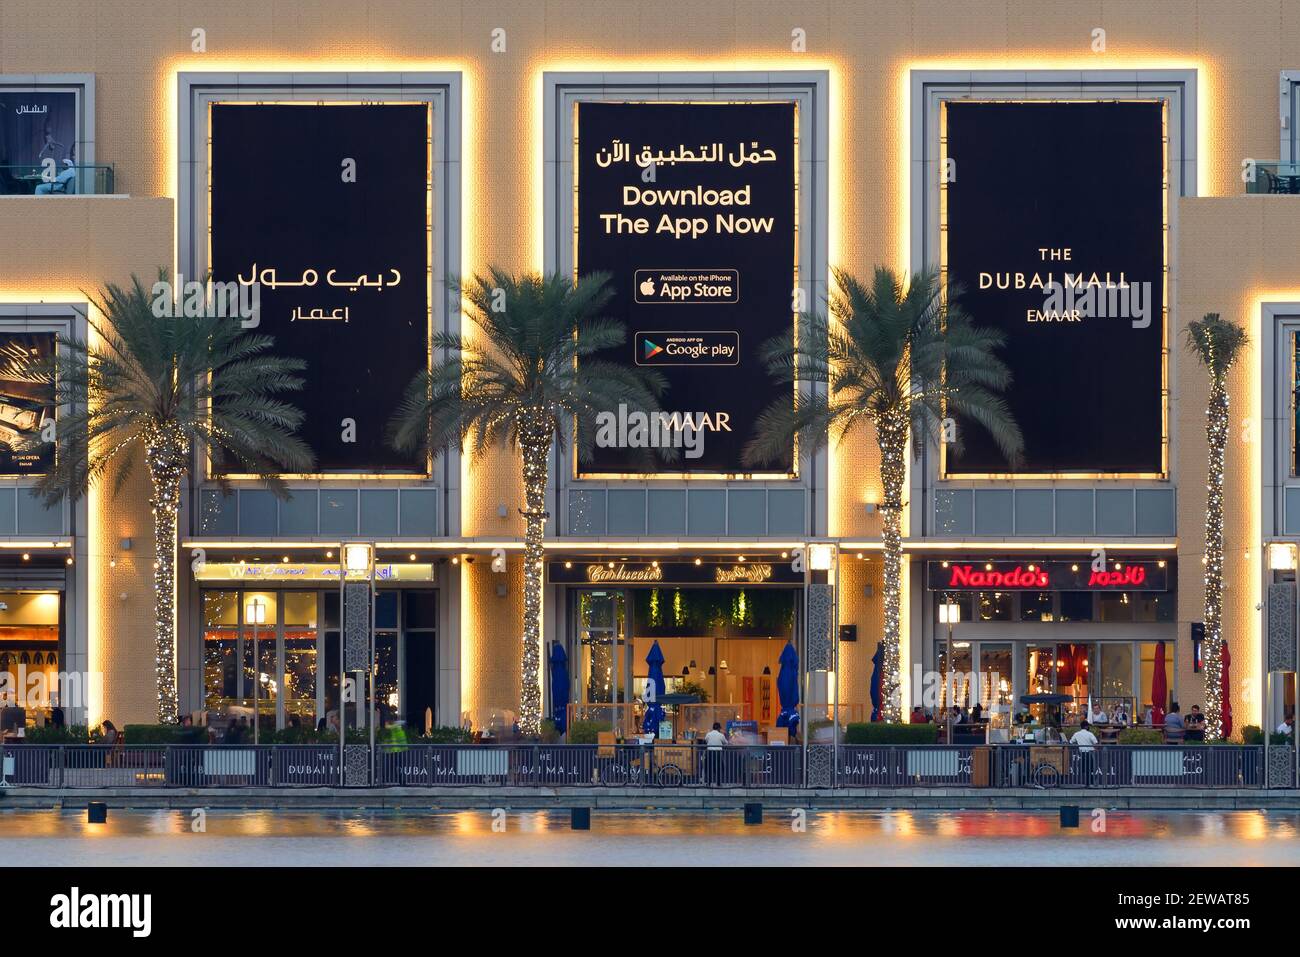 El Dubai Mall Facade, el centro comercial más grande del mundo, situado en Dubai, Emiratos Árabes Unidos. Vista exterior de la propiedad de lujo Emaar. Foto de stock